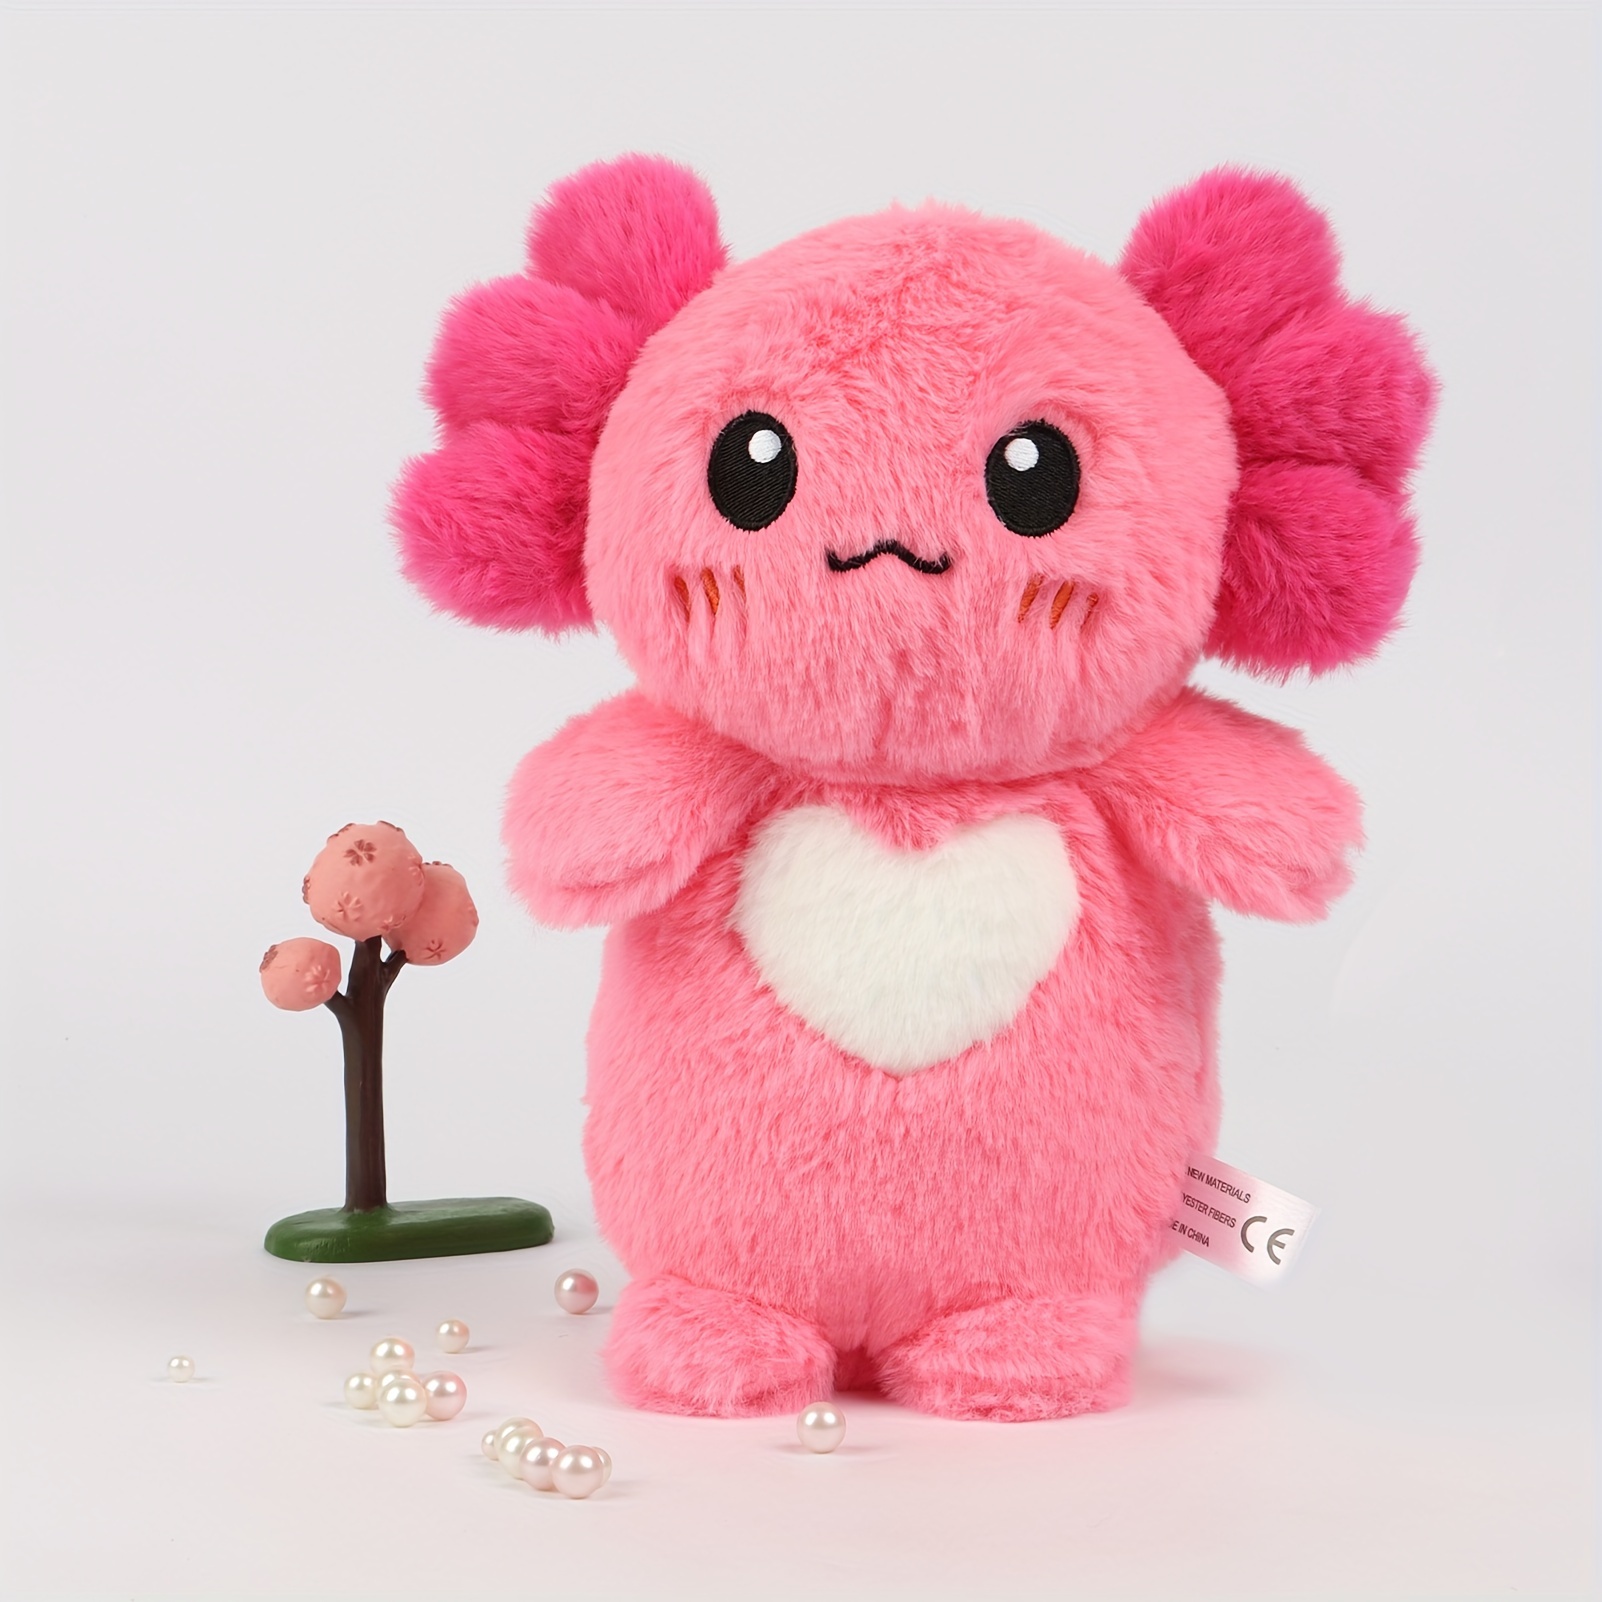 Cute Stuffed Animals Kawaii Plush Toys - Mushroom Cat Axolotl Pig